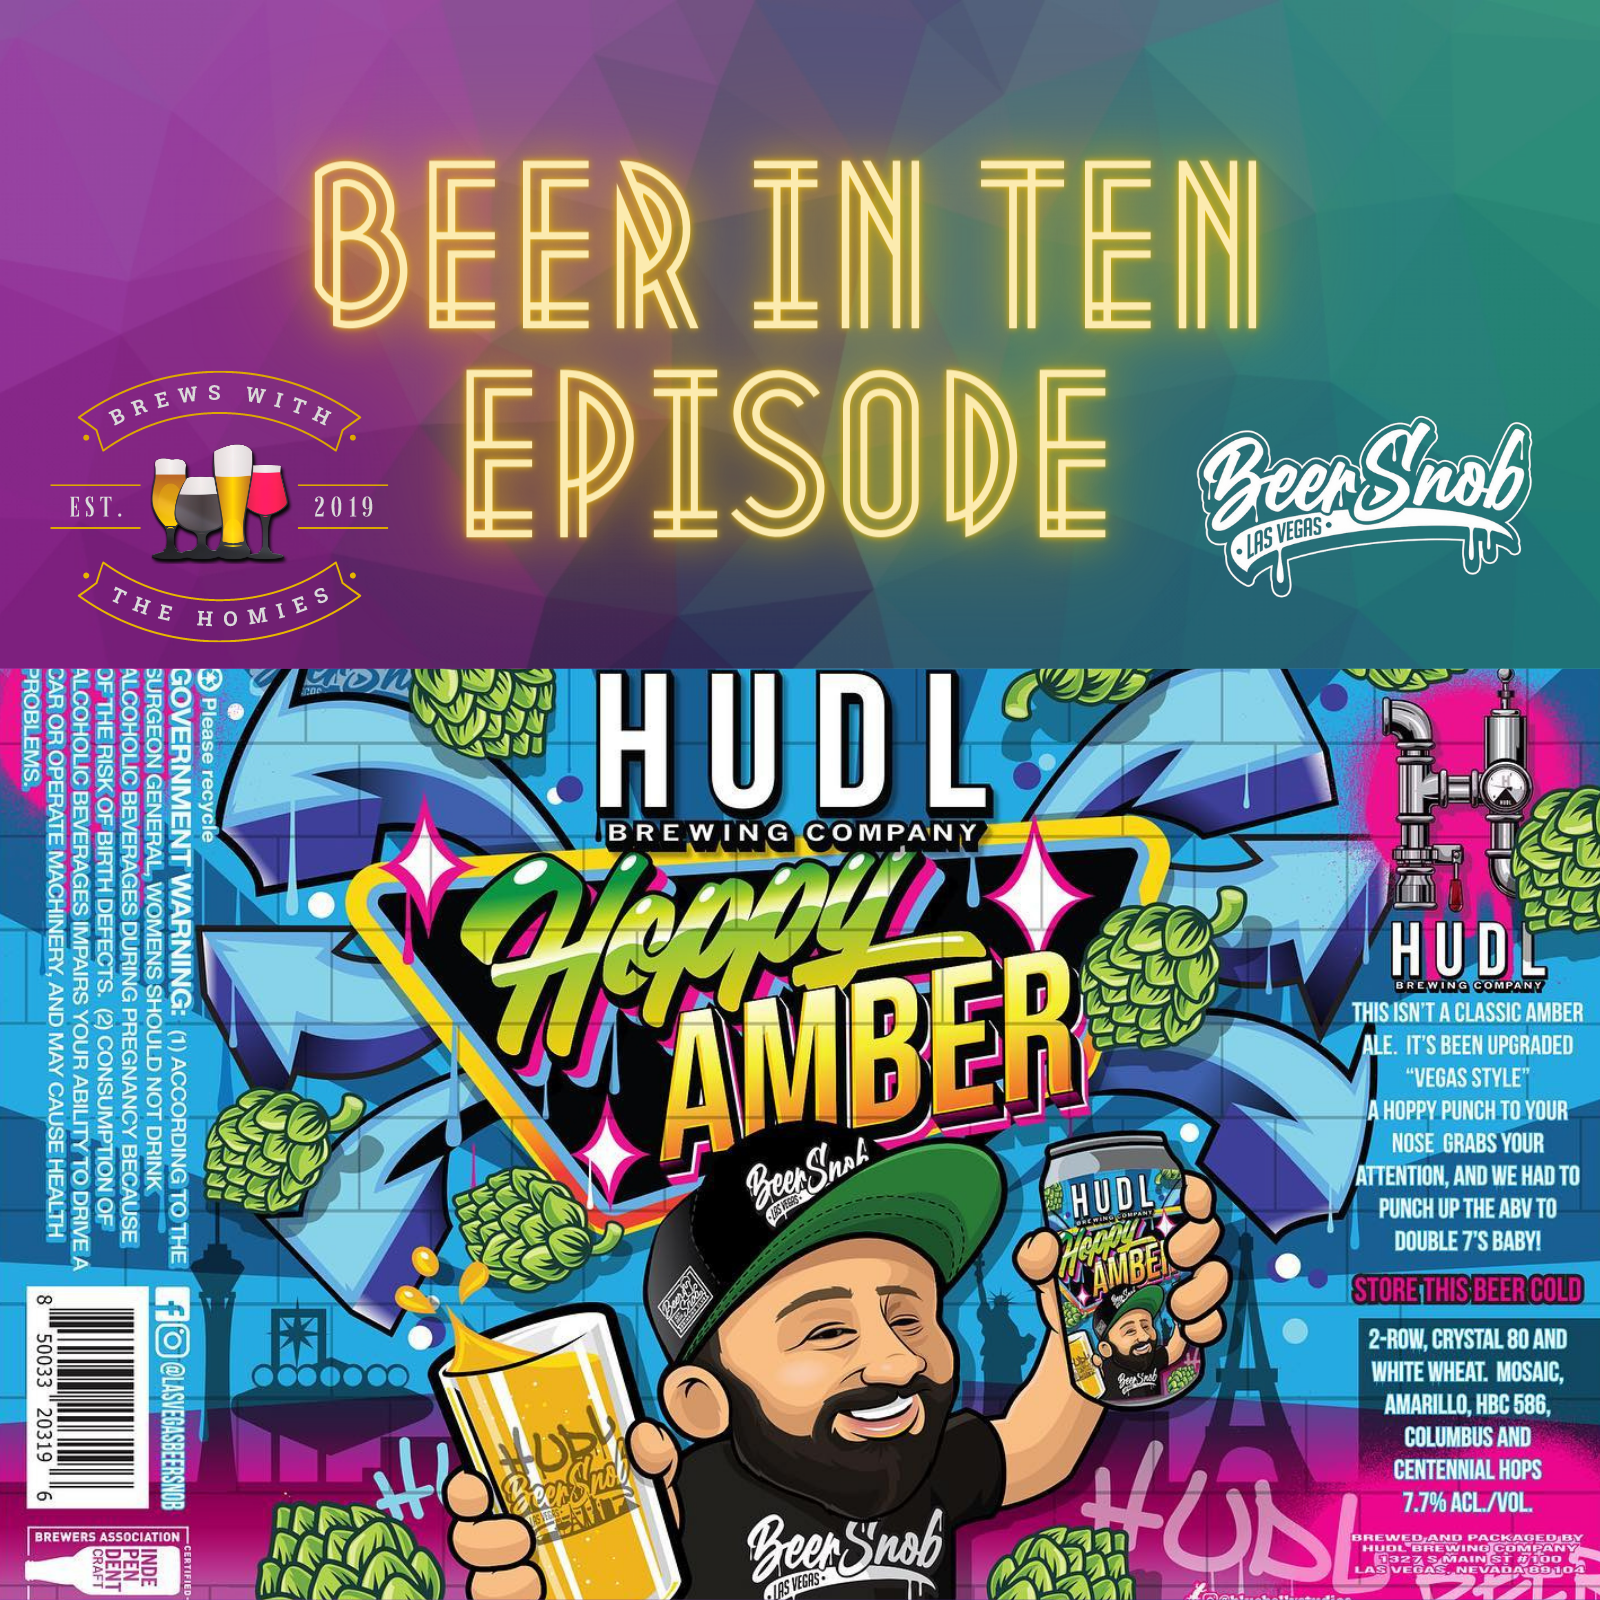 Beer in ten episode: "Hoppy Amber" from Las Vegas Beer Snob & HUDL